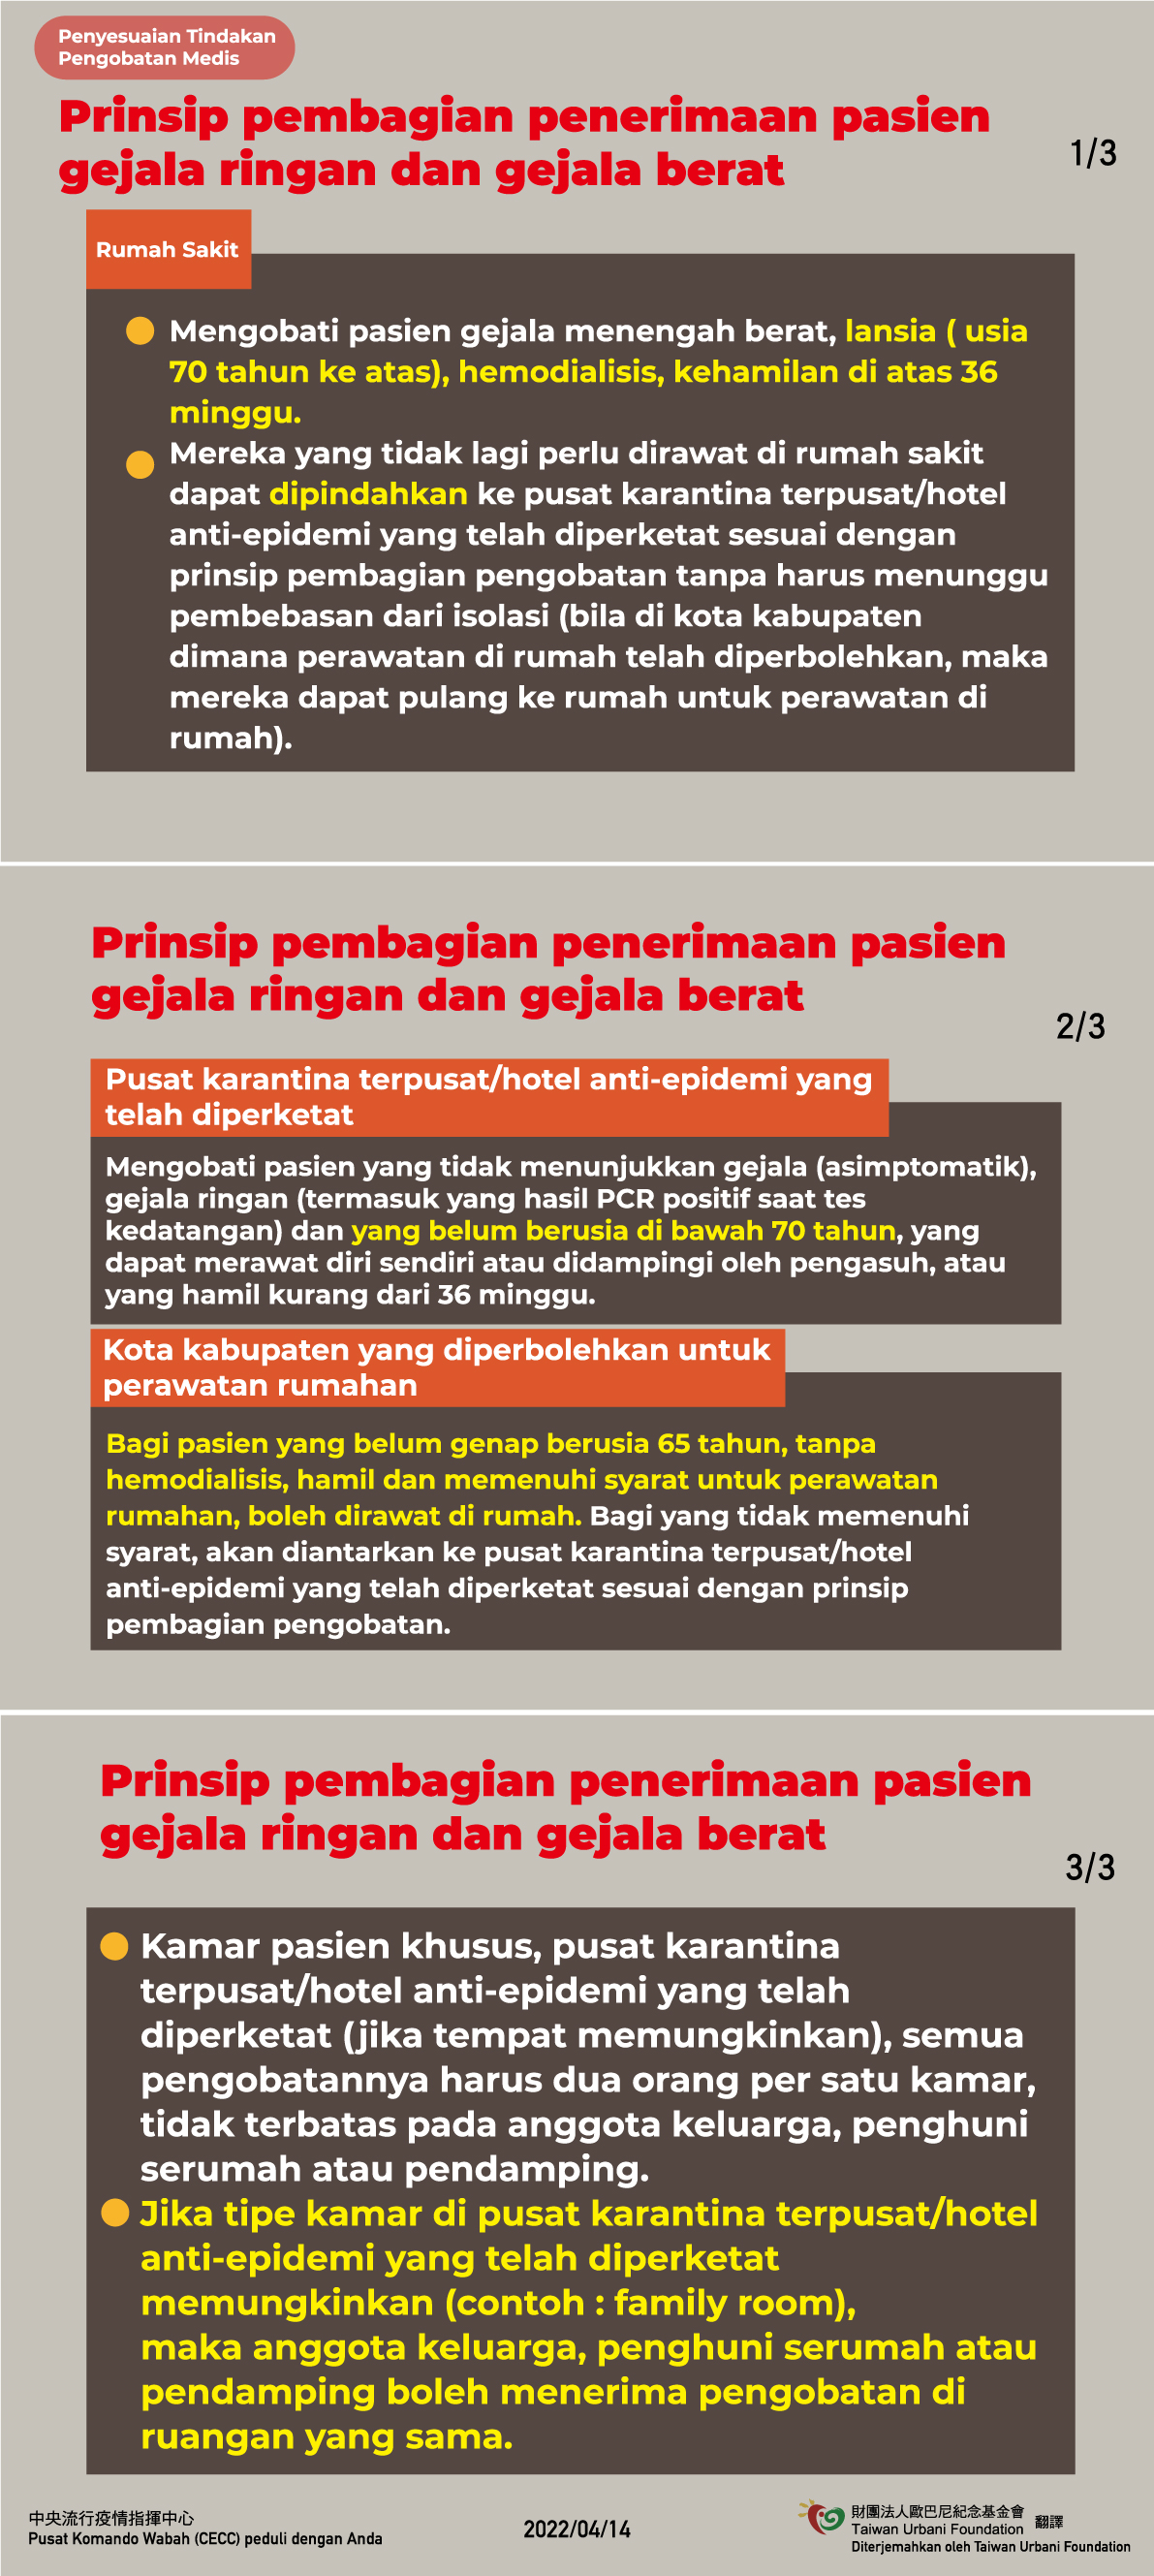 醫療應變作為-輕重症分流收治原則調整-印尼文.jpg